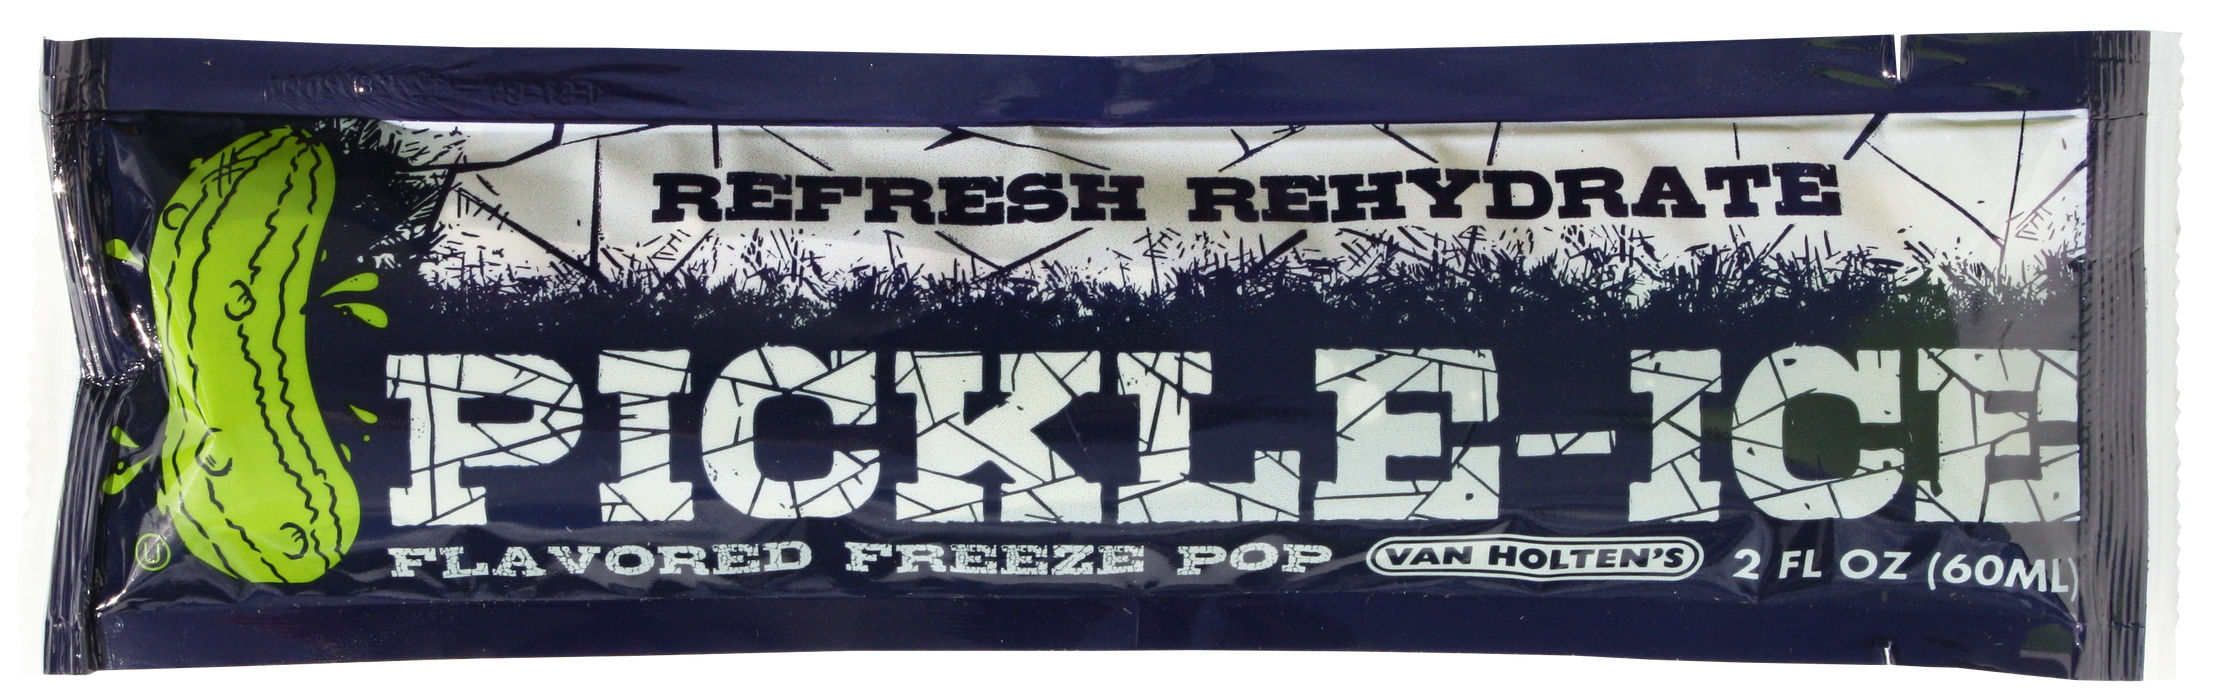 Van Holten's Pickle Ice Freeze Pops